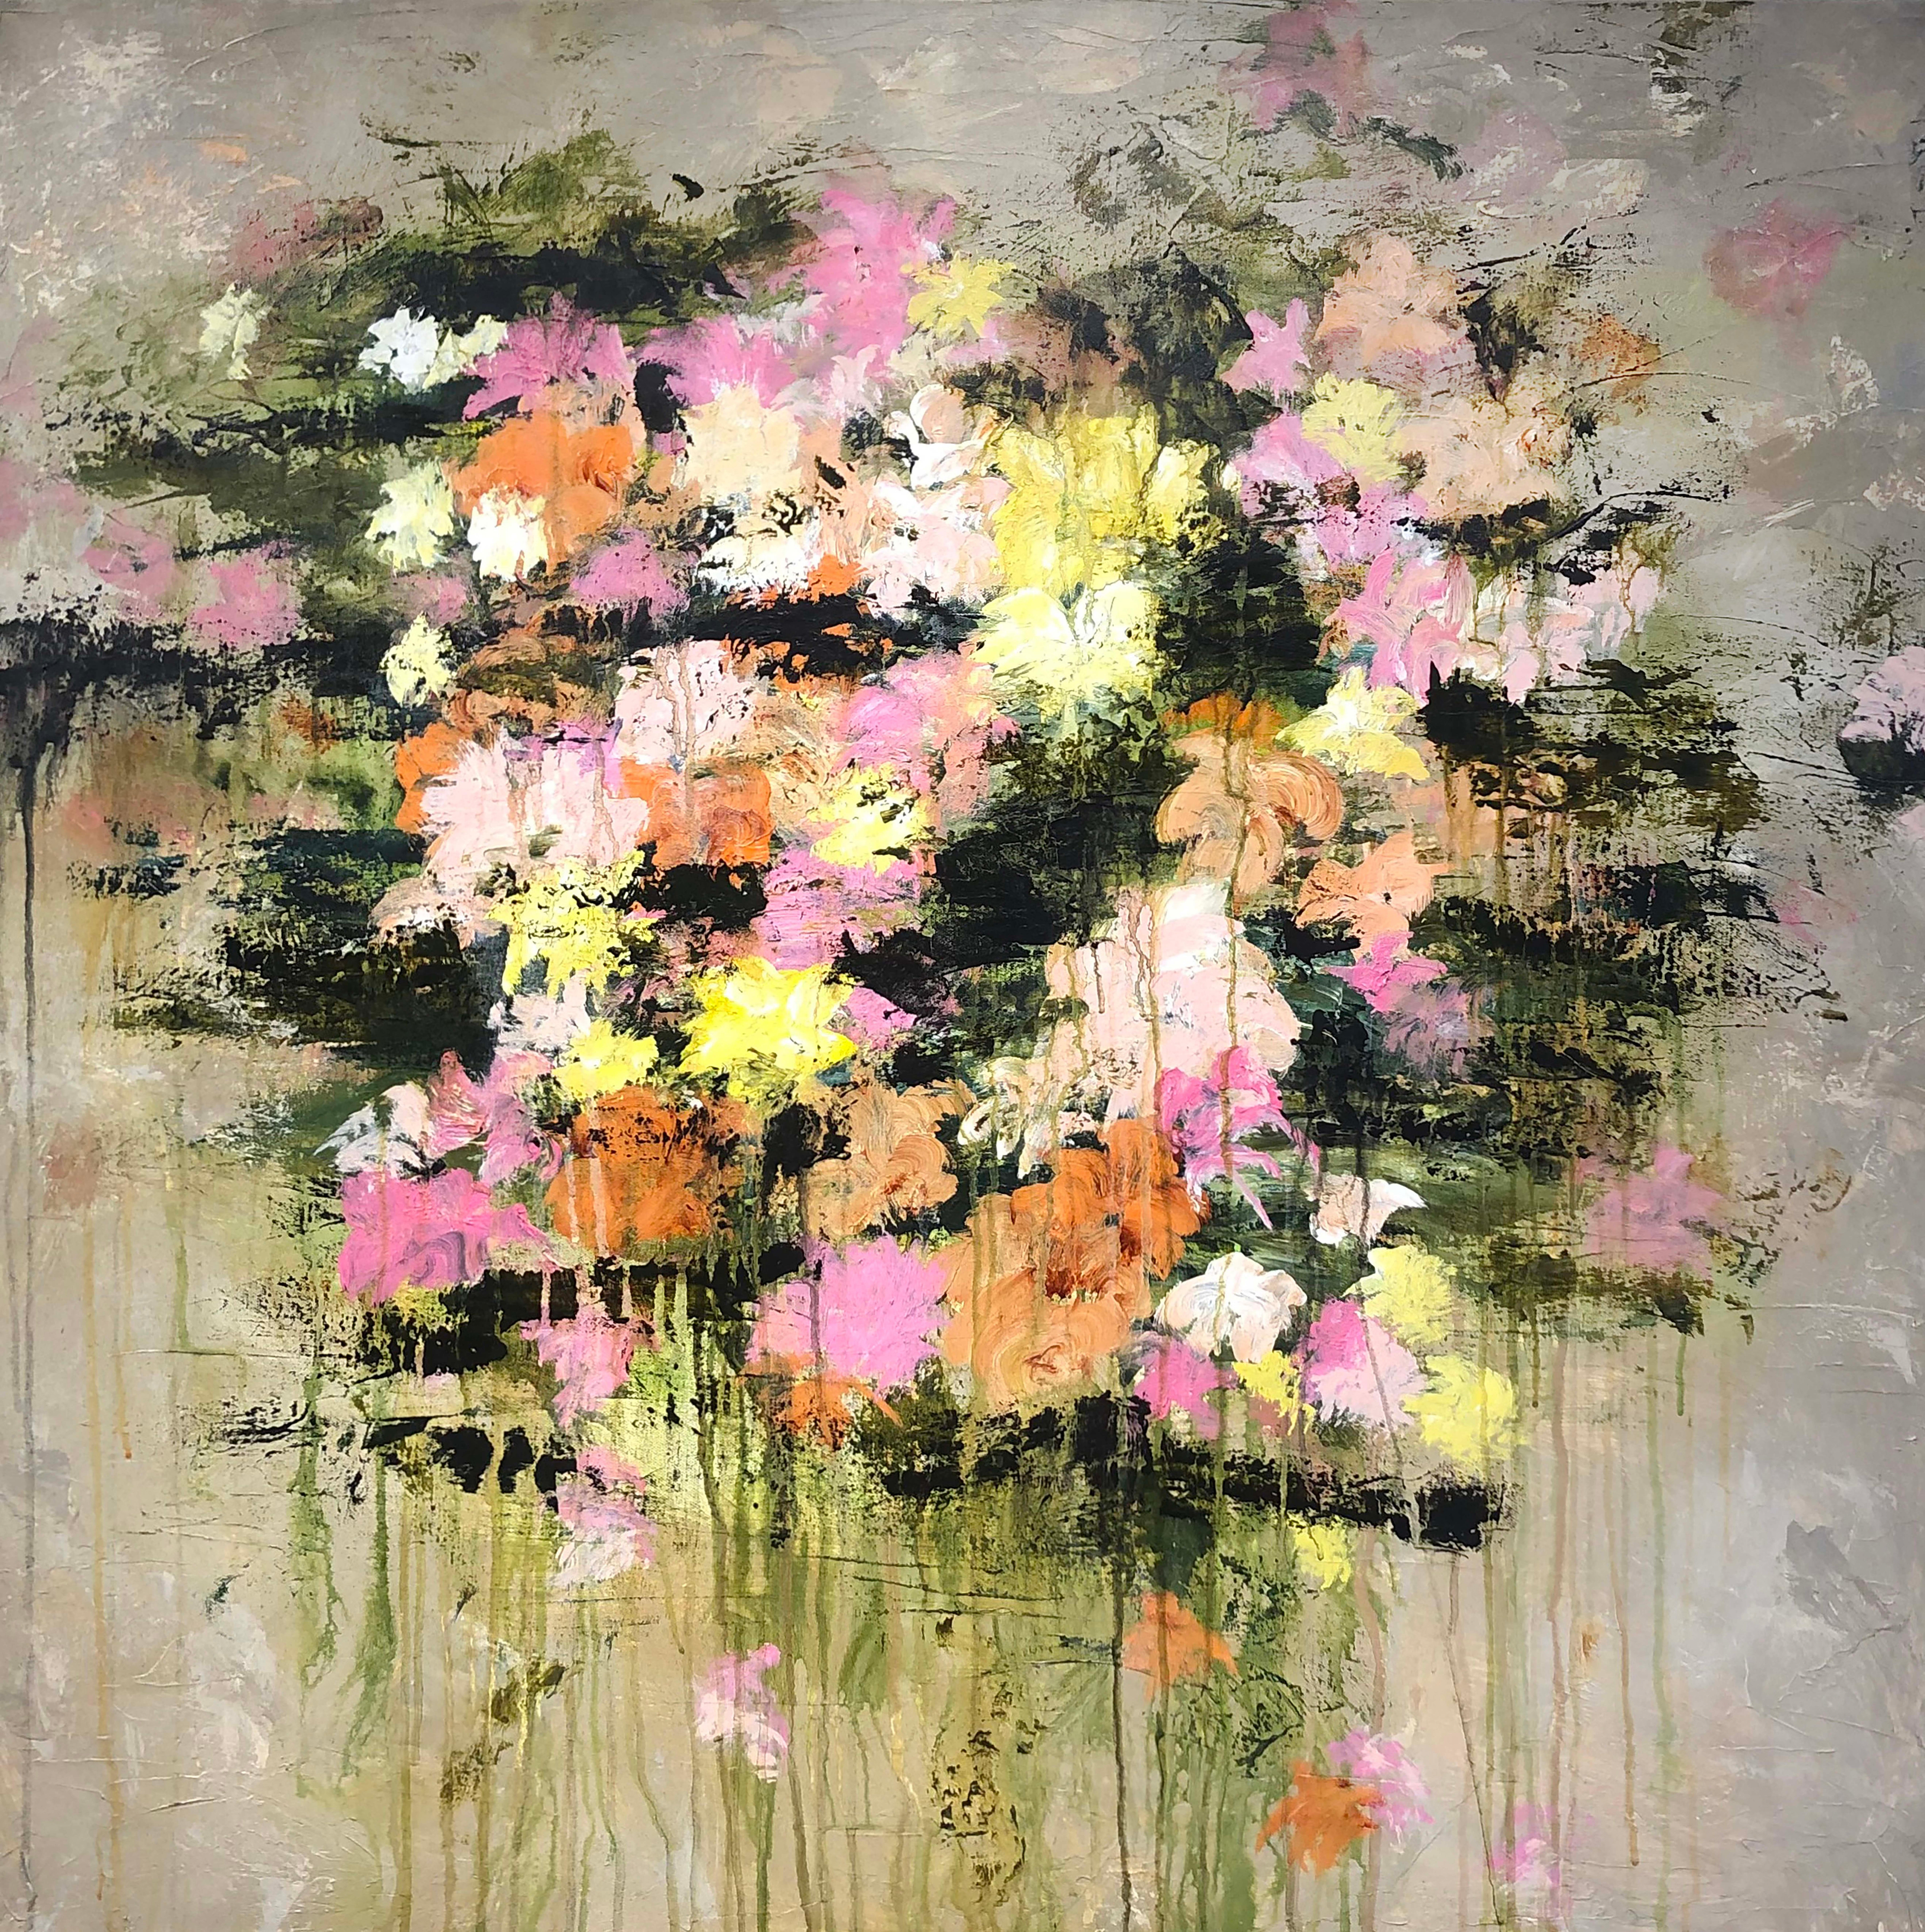 Cette œuvre, "Pink Paradise", est une peinture à l'huile sur toile 36x36 de l'artiste Gary Zack représentant un bouquet abstrait de fleurs mélangées roses, orange, vertes et jaunes. L'arrière-plan est une couleur taupe neutre, qui fait ressortir